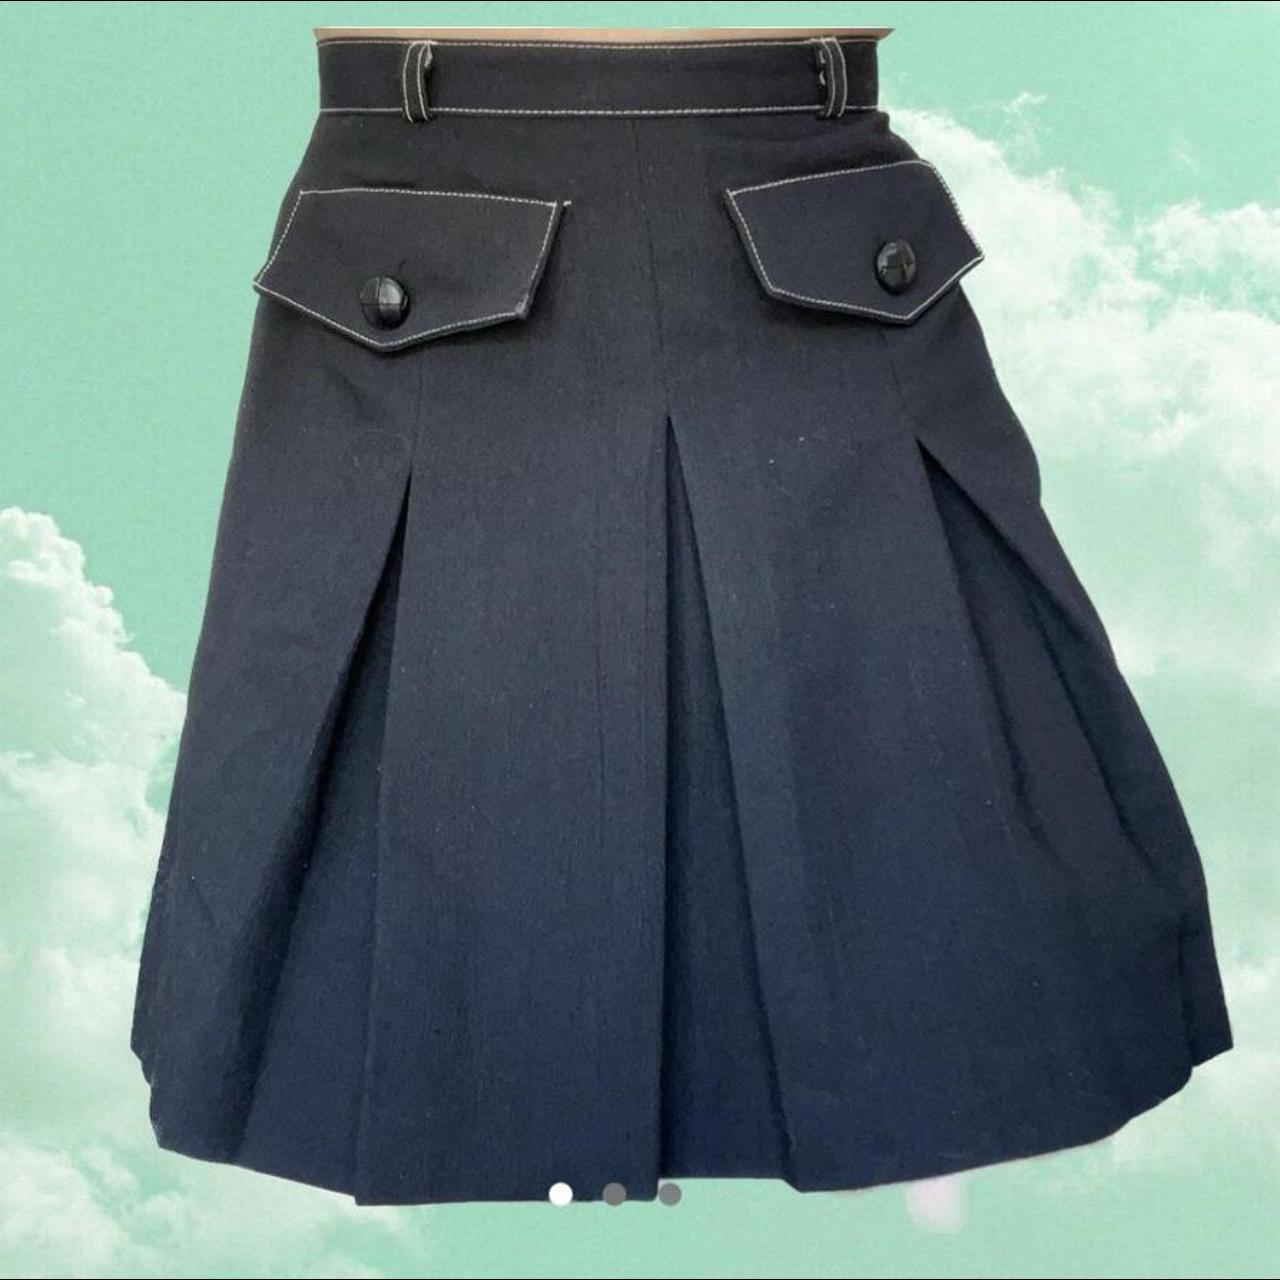 Product Image 1 - Y2K mini skirt

Black vintage 2000s